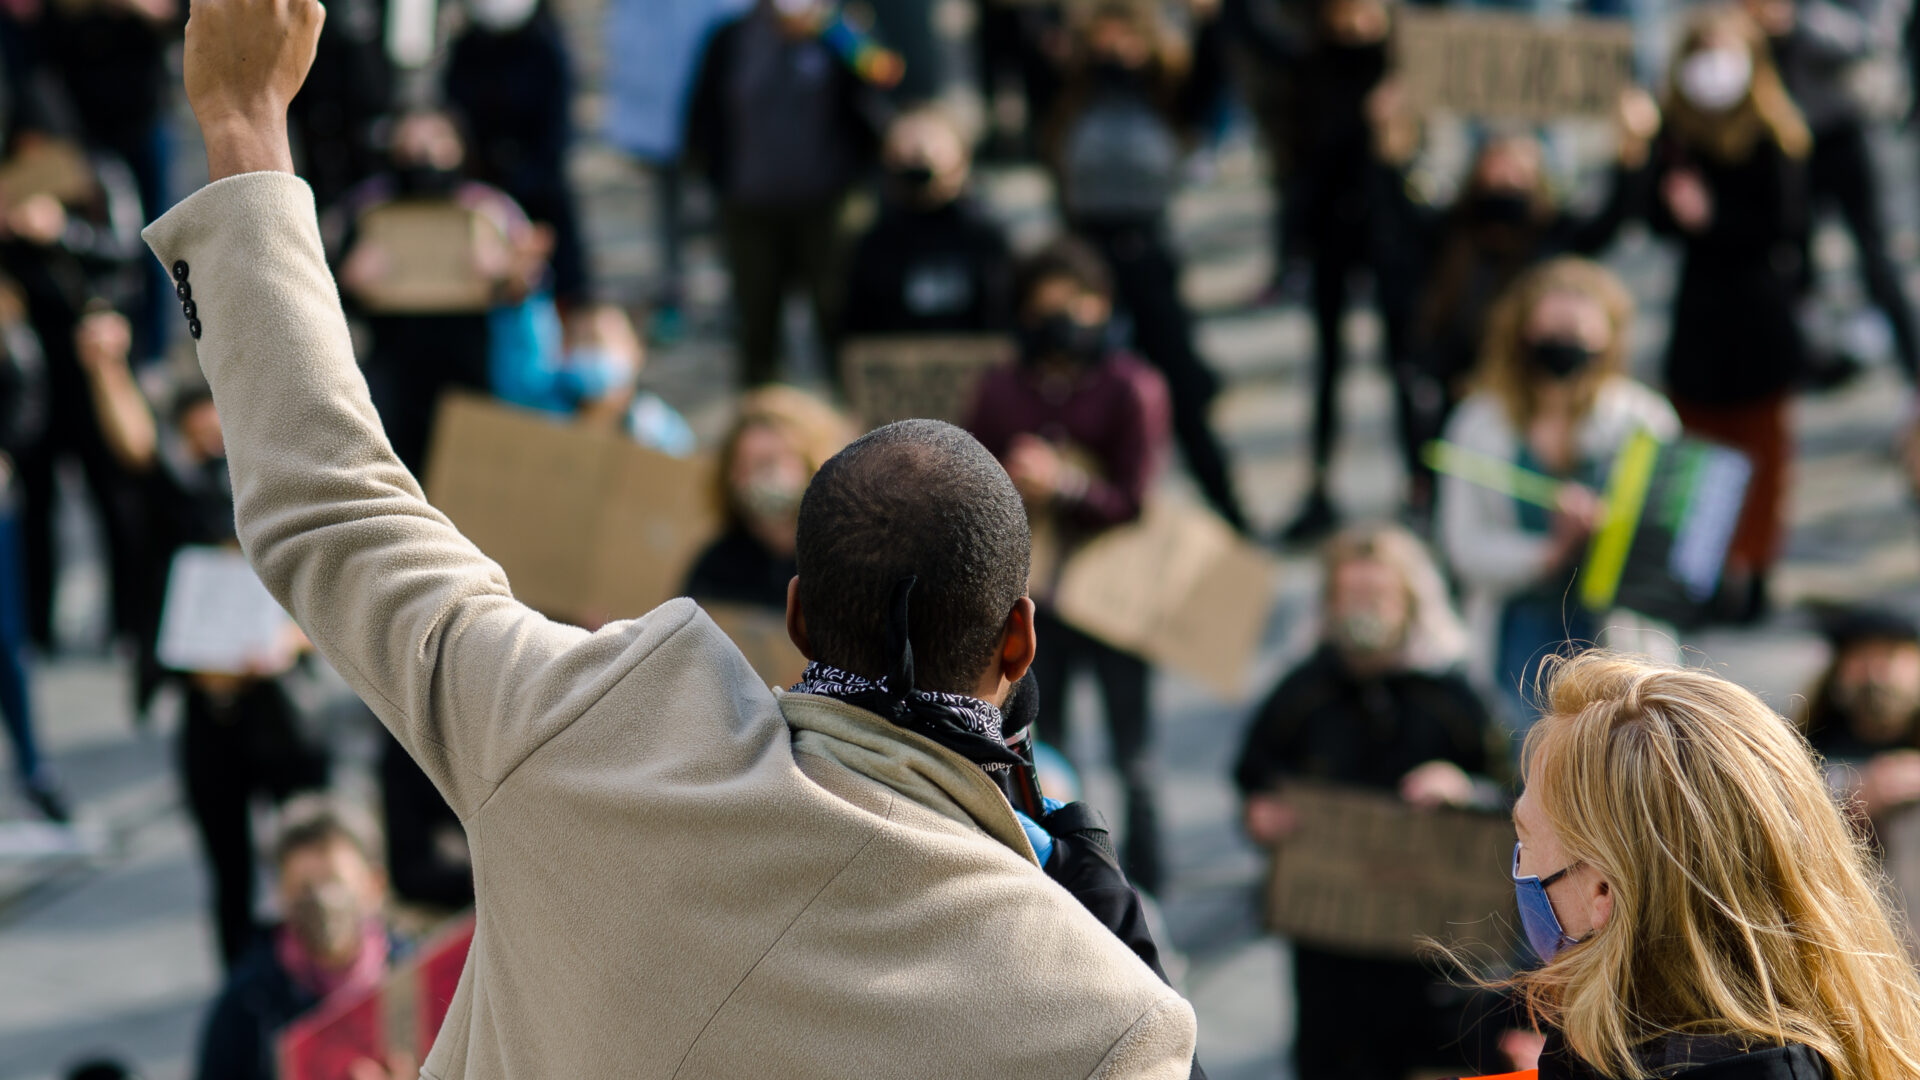 We zien de achterkant van een persoon die bij een protest zijn vuist omhoog steekt. Hij staat op een verhoging. Er staan protestanten naar hem te kijken die kartonnen bordjes met Black Lives Matter leuzen omhoog houden.